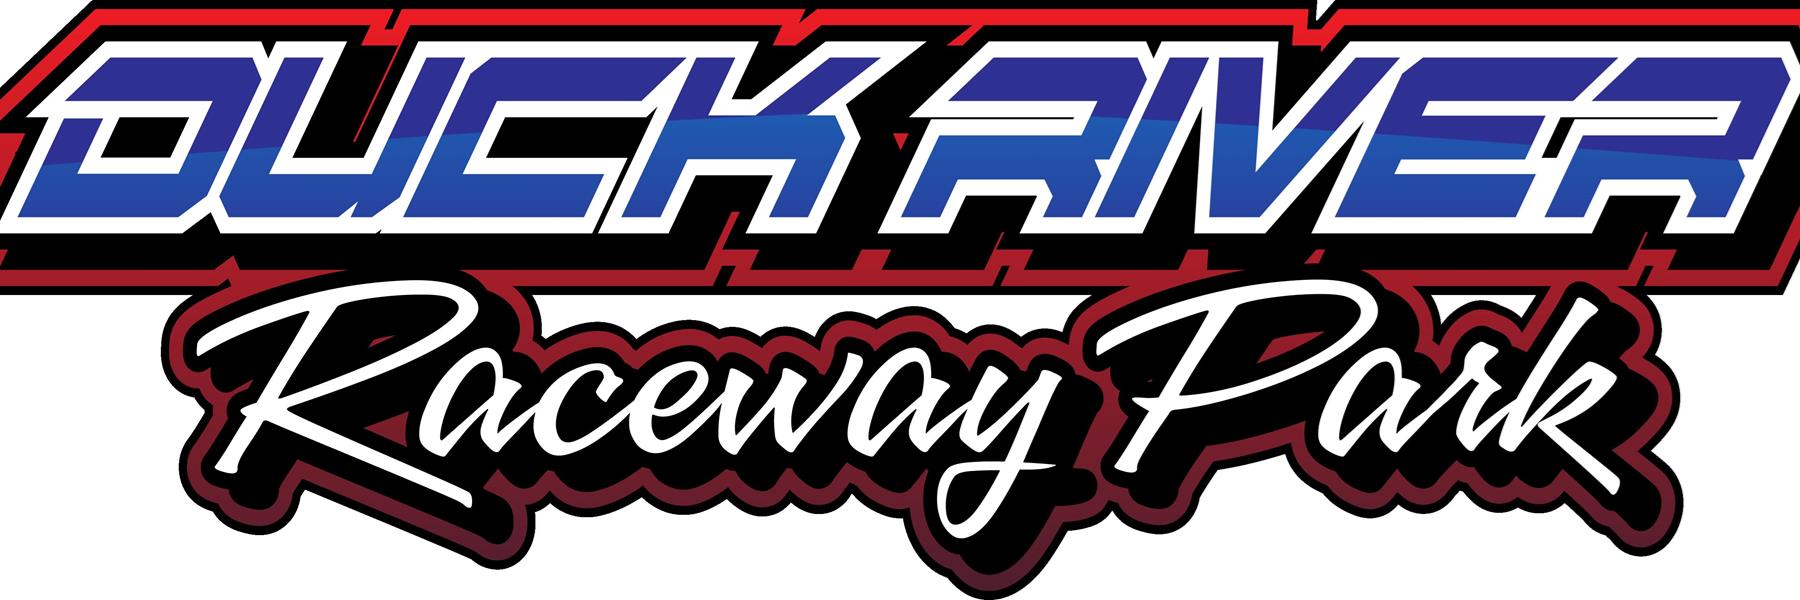 7/3/2022 - Duck River Raceway Park